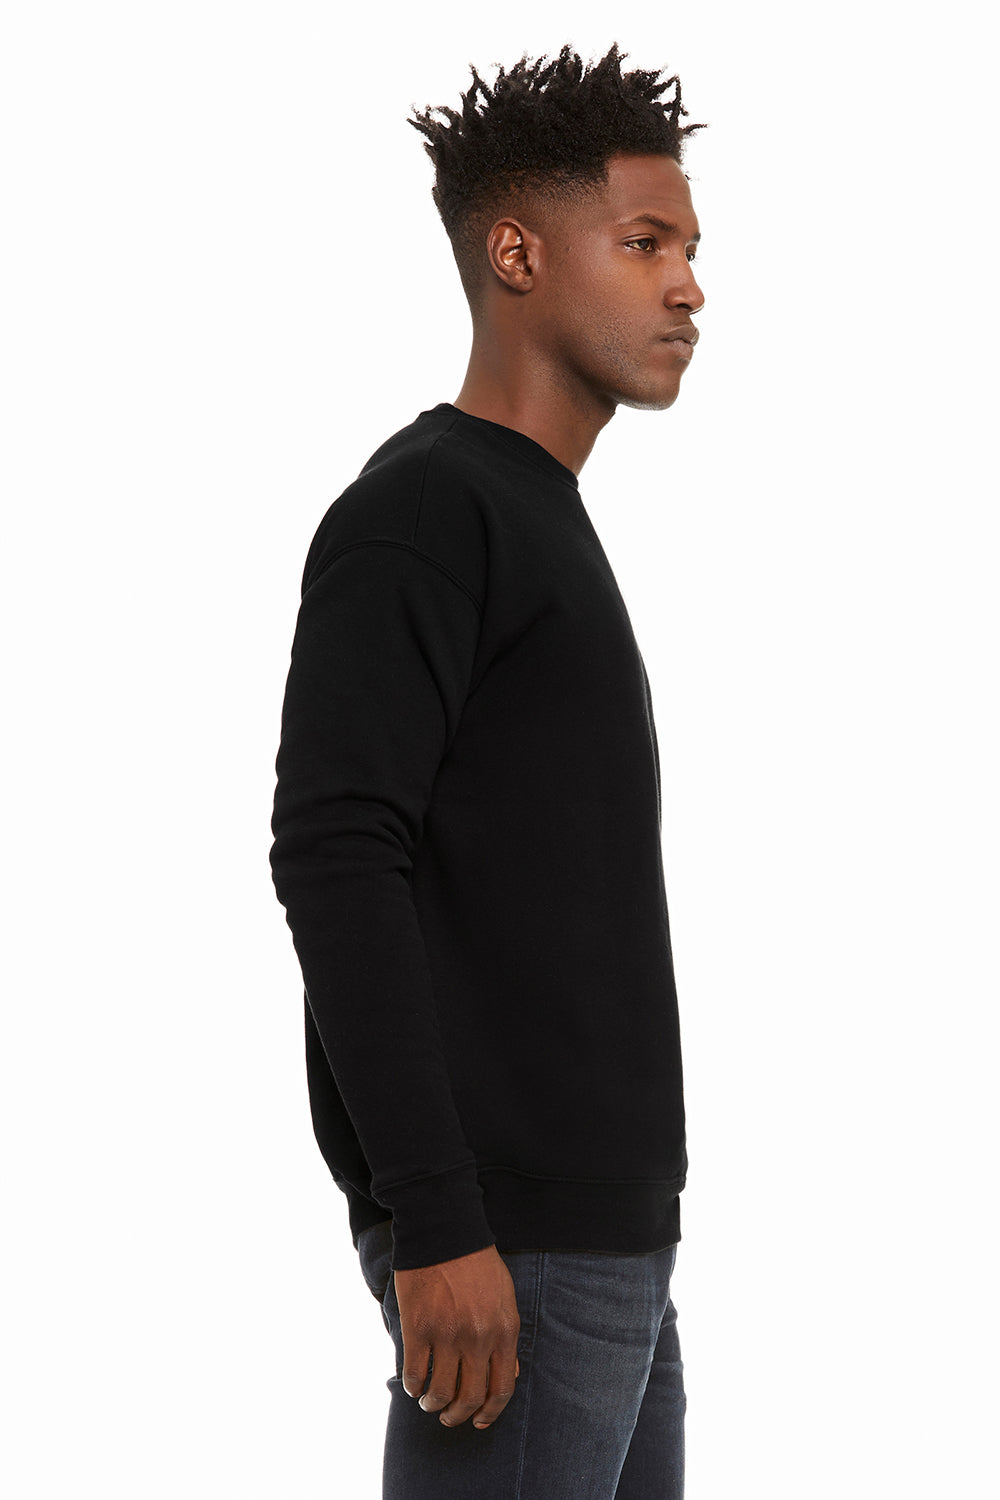 Bella + Canvas BC3945/3945 Mens Fleece Crewneck Sweatshirt DTG Black Model Side